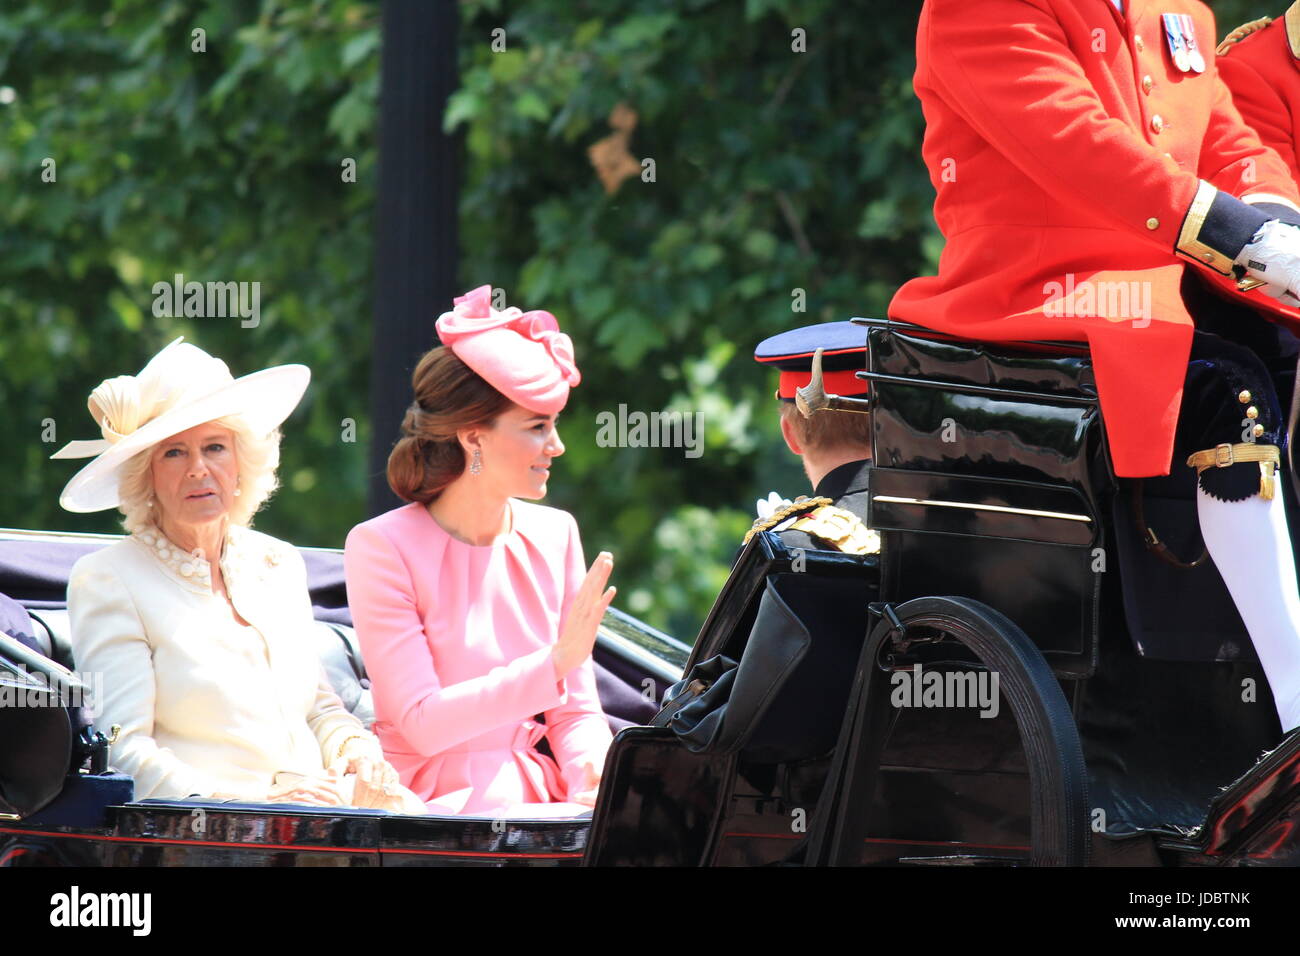 London, England - 17. Juni 2017: Prinz Harry, Kate Middleton und Camilla Parker Bowles in einer offenen Kutsche für die Farbe 2015 die Königinnen, die offiziellen Geburtstag, London, UK. Foto Fotografie editorial Bild zu markieren Stockfoto